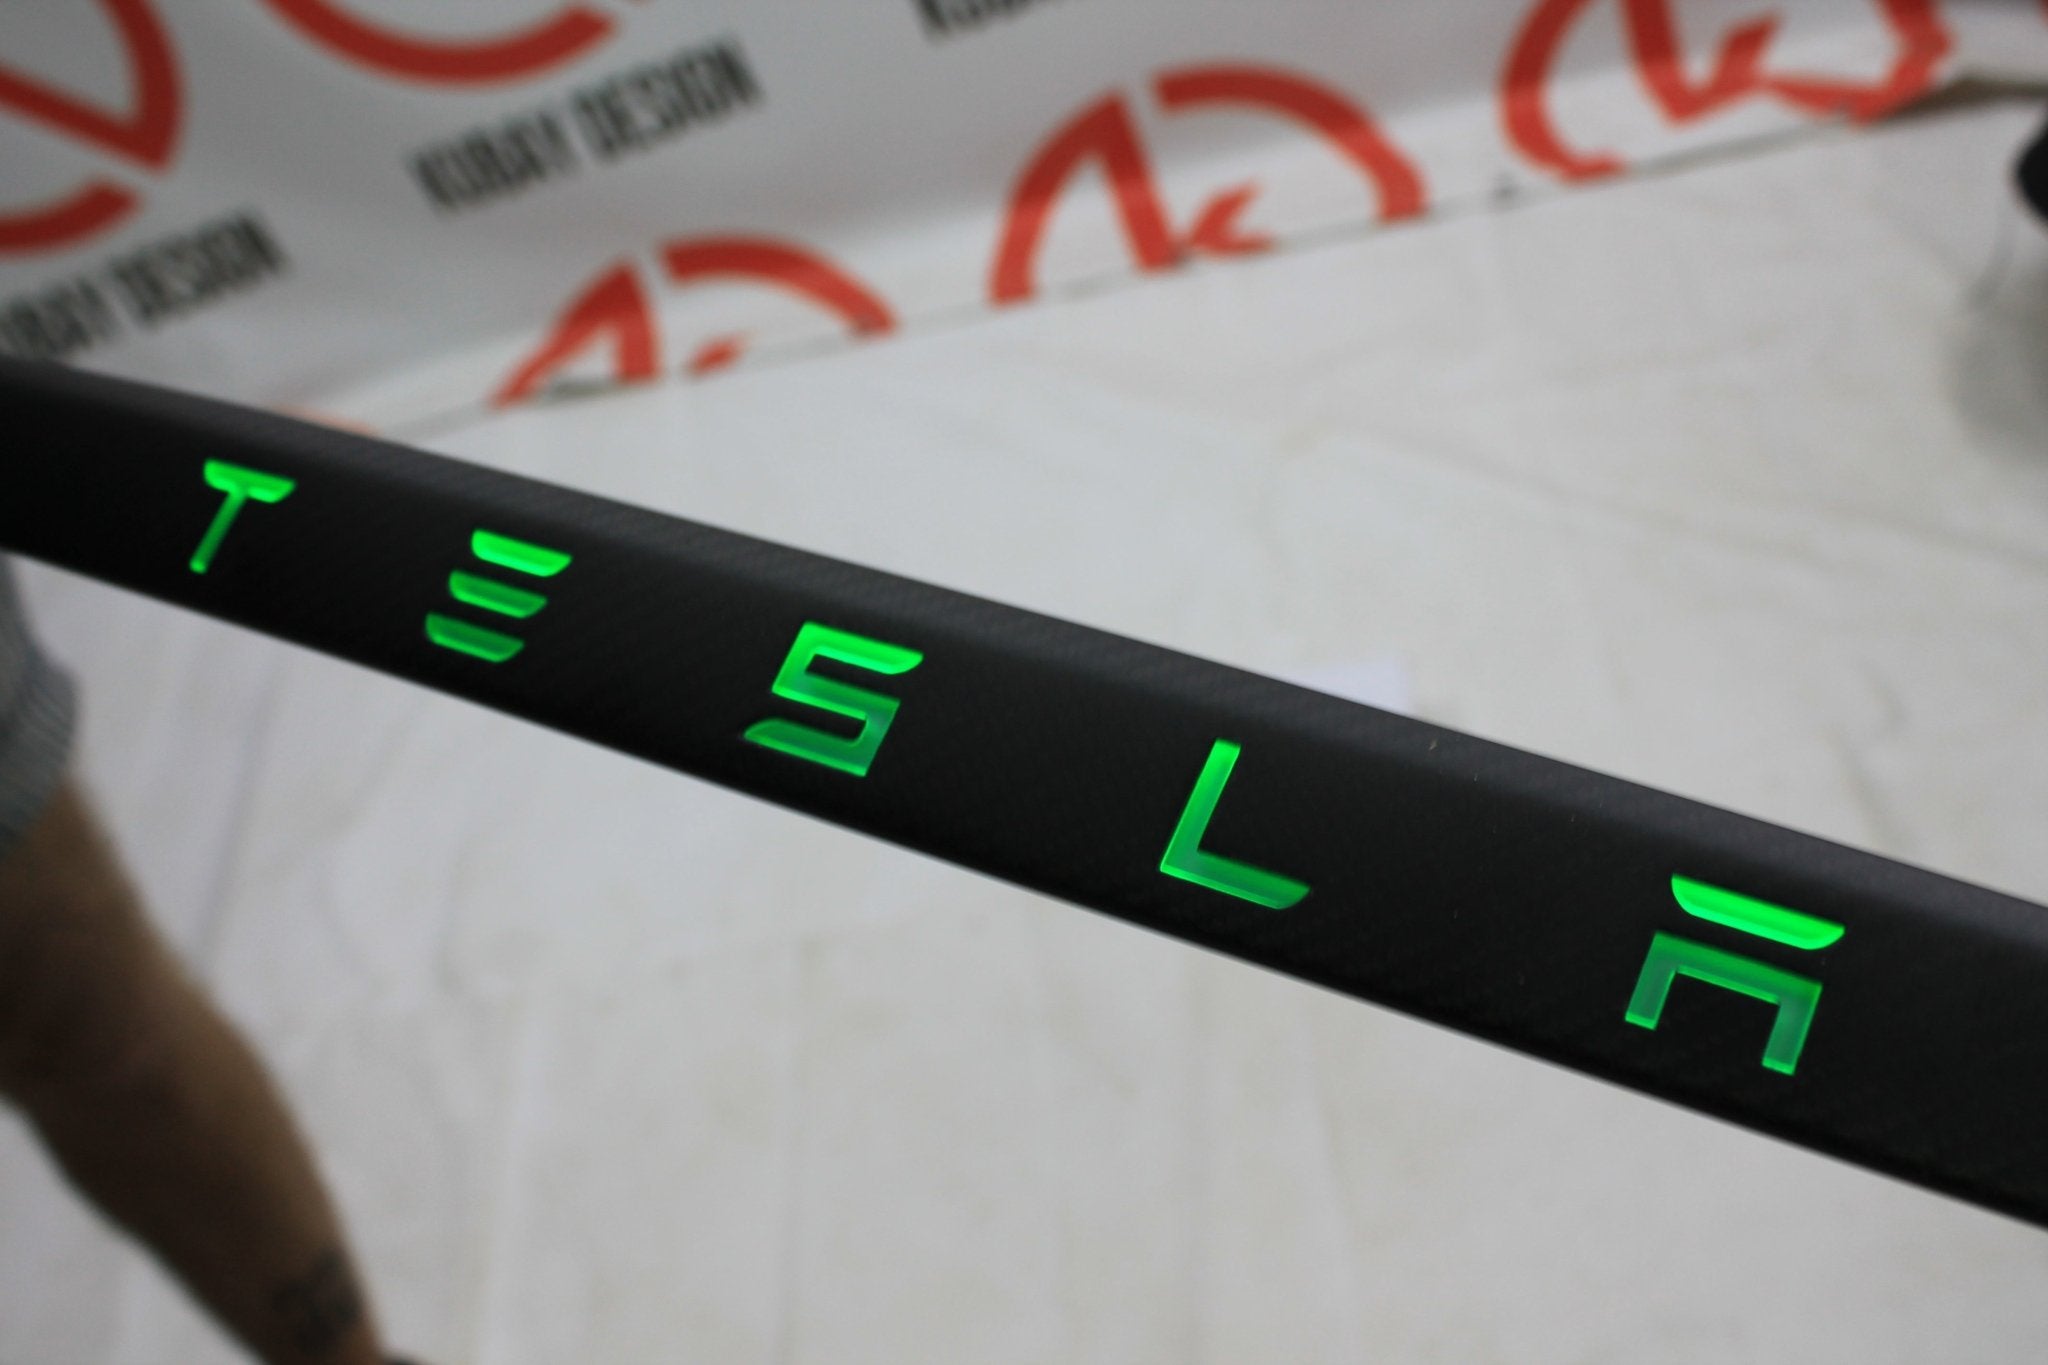 Rear trunk carbon tail trim + LED Tesla lid for Tesla Model S 2013 - 2019